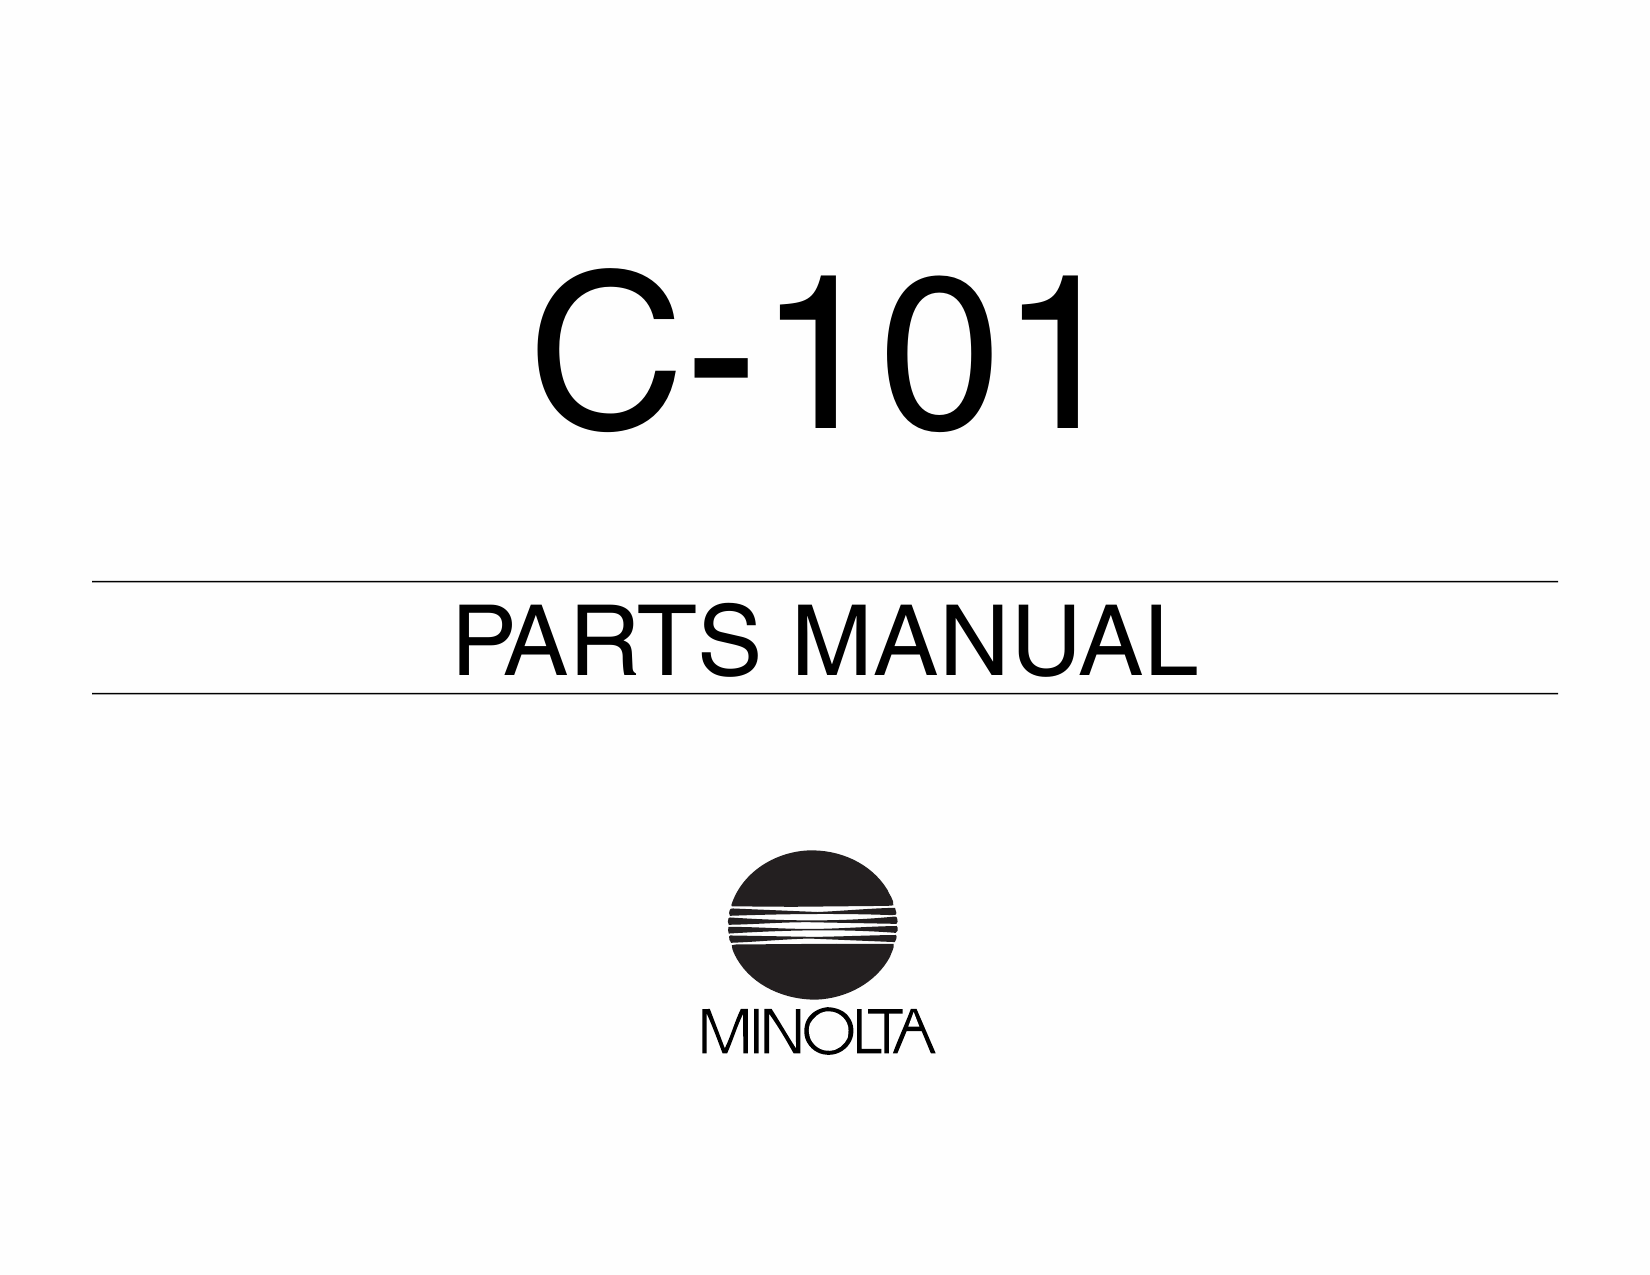 Konica-Minolta Options C-101 Parts Manual-1